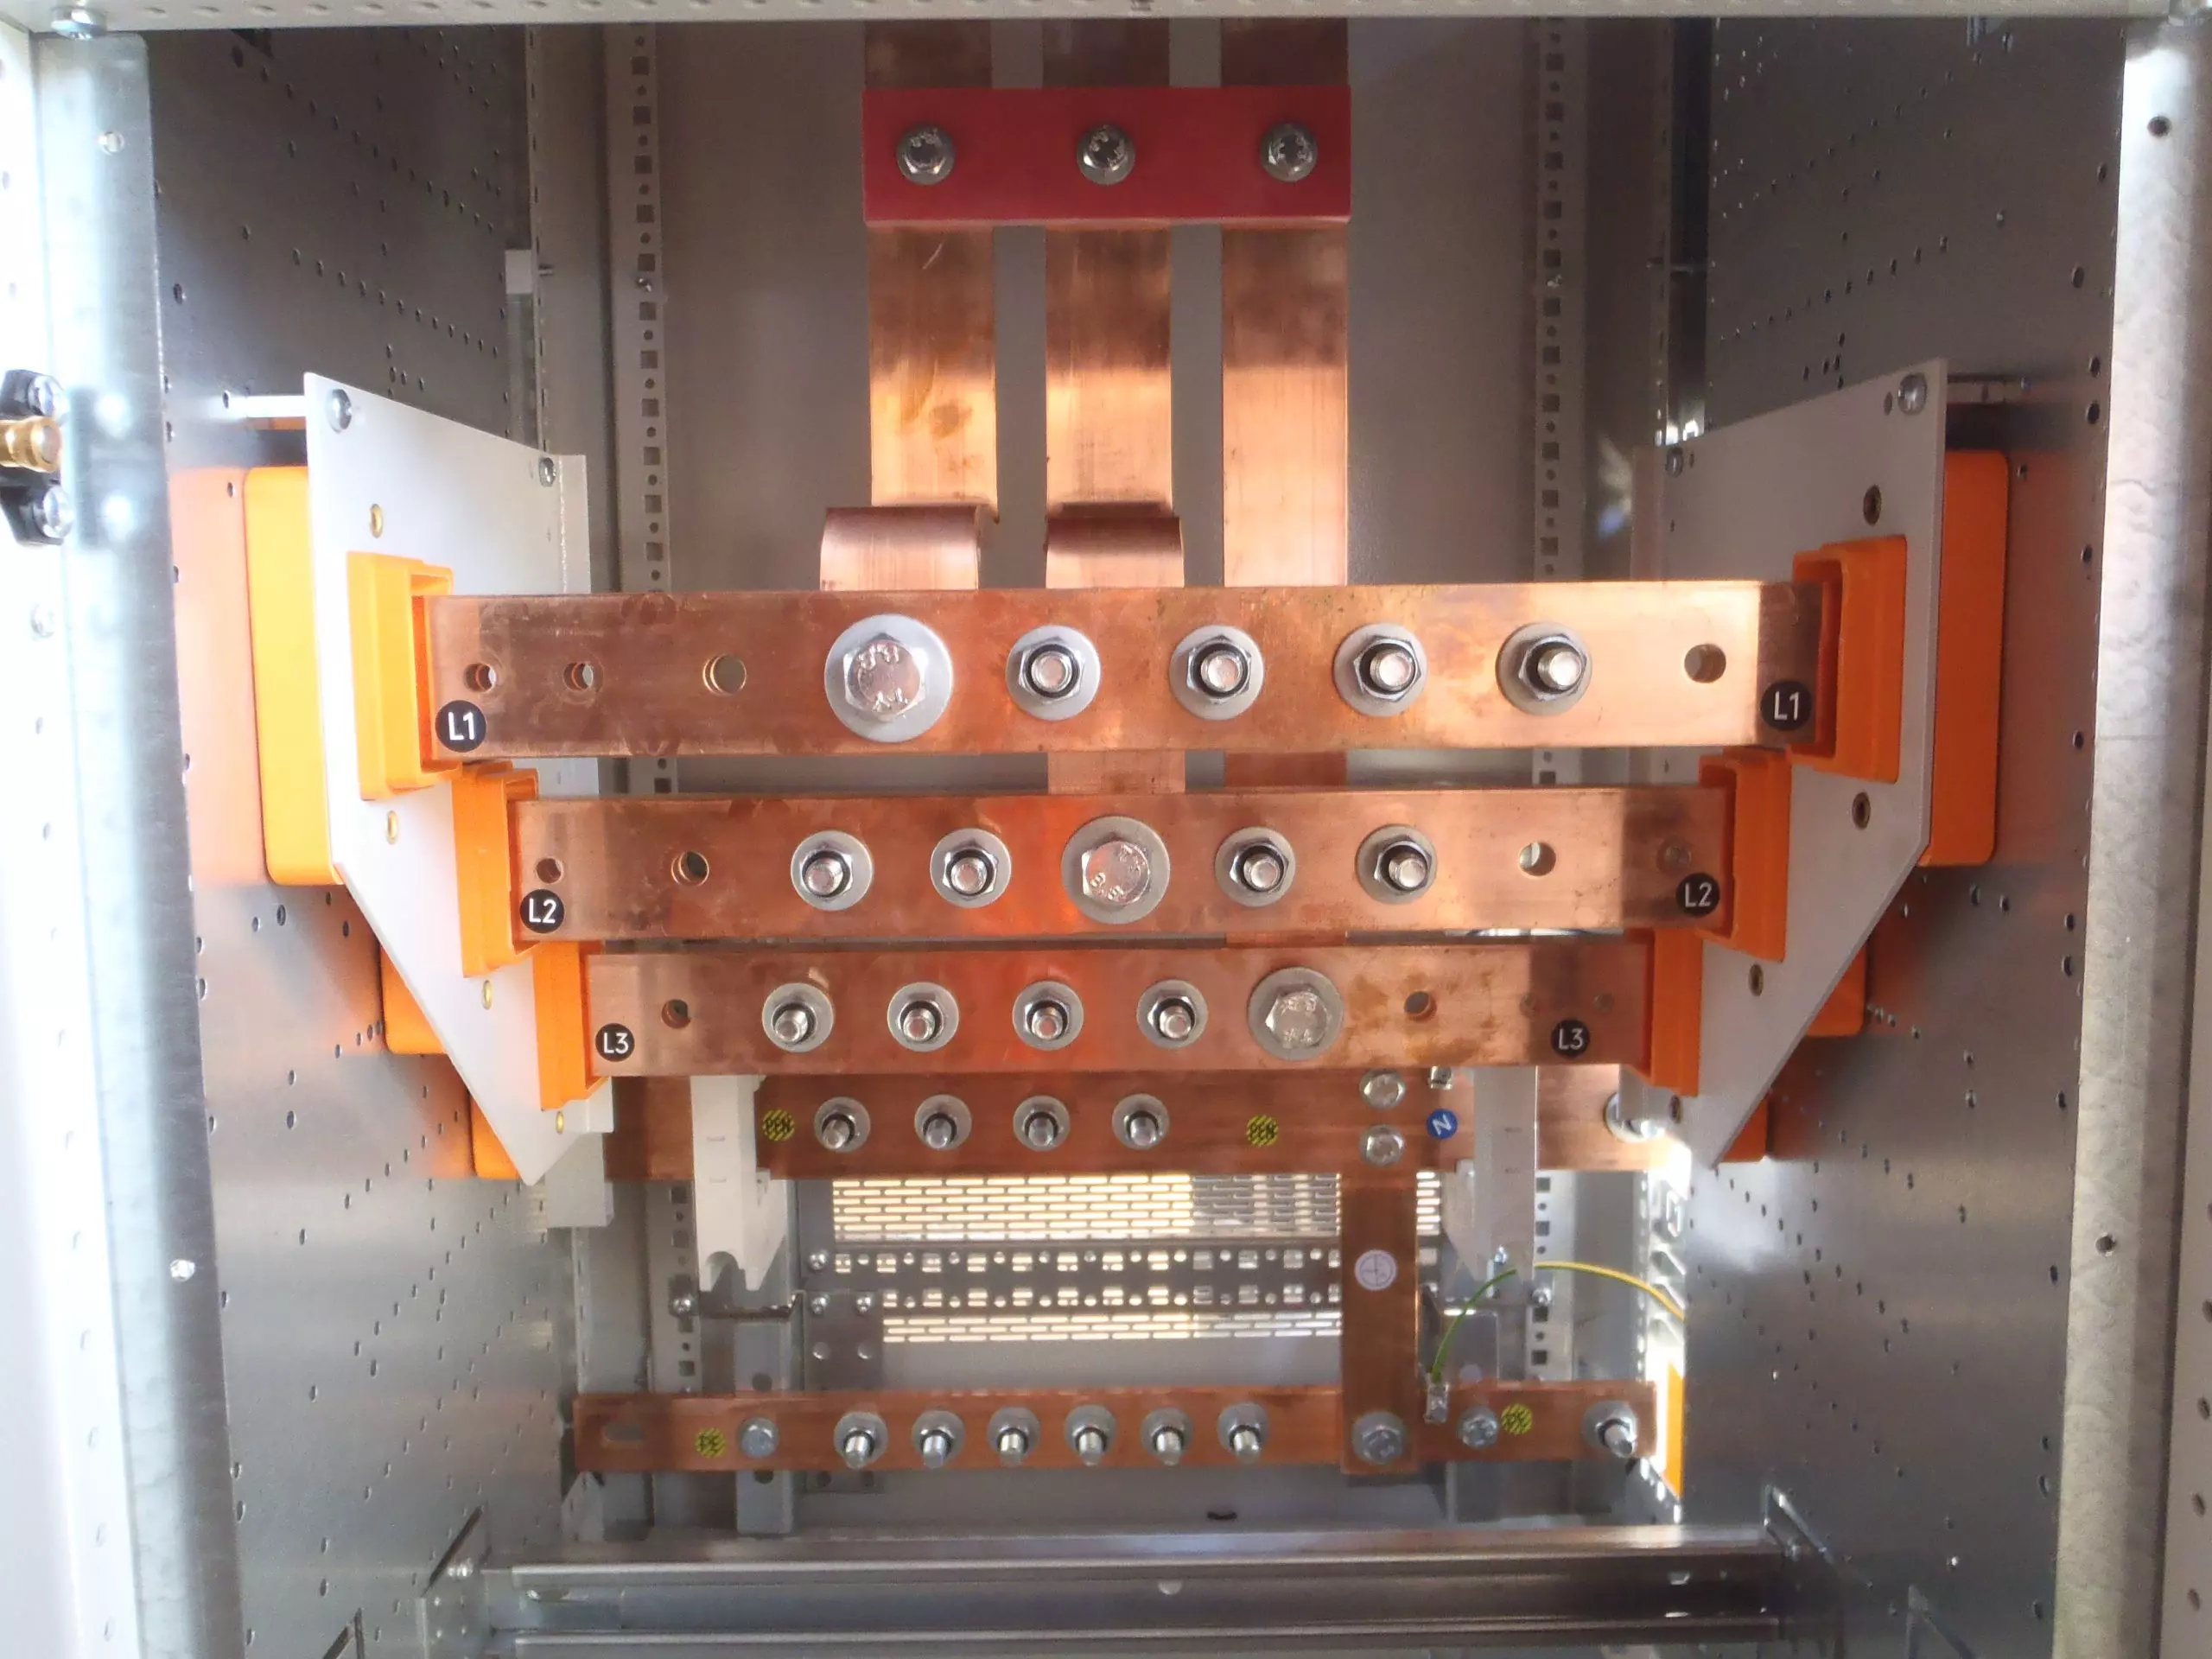 Bild zeigt ein Kupfersystem in einem NSHV Verteiler